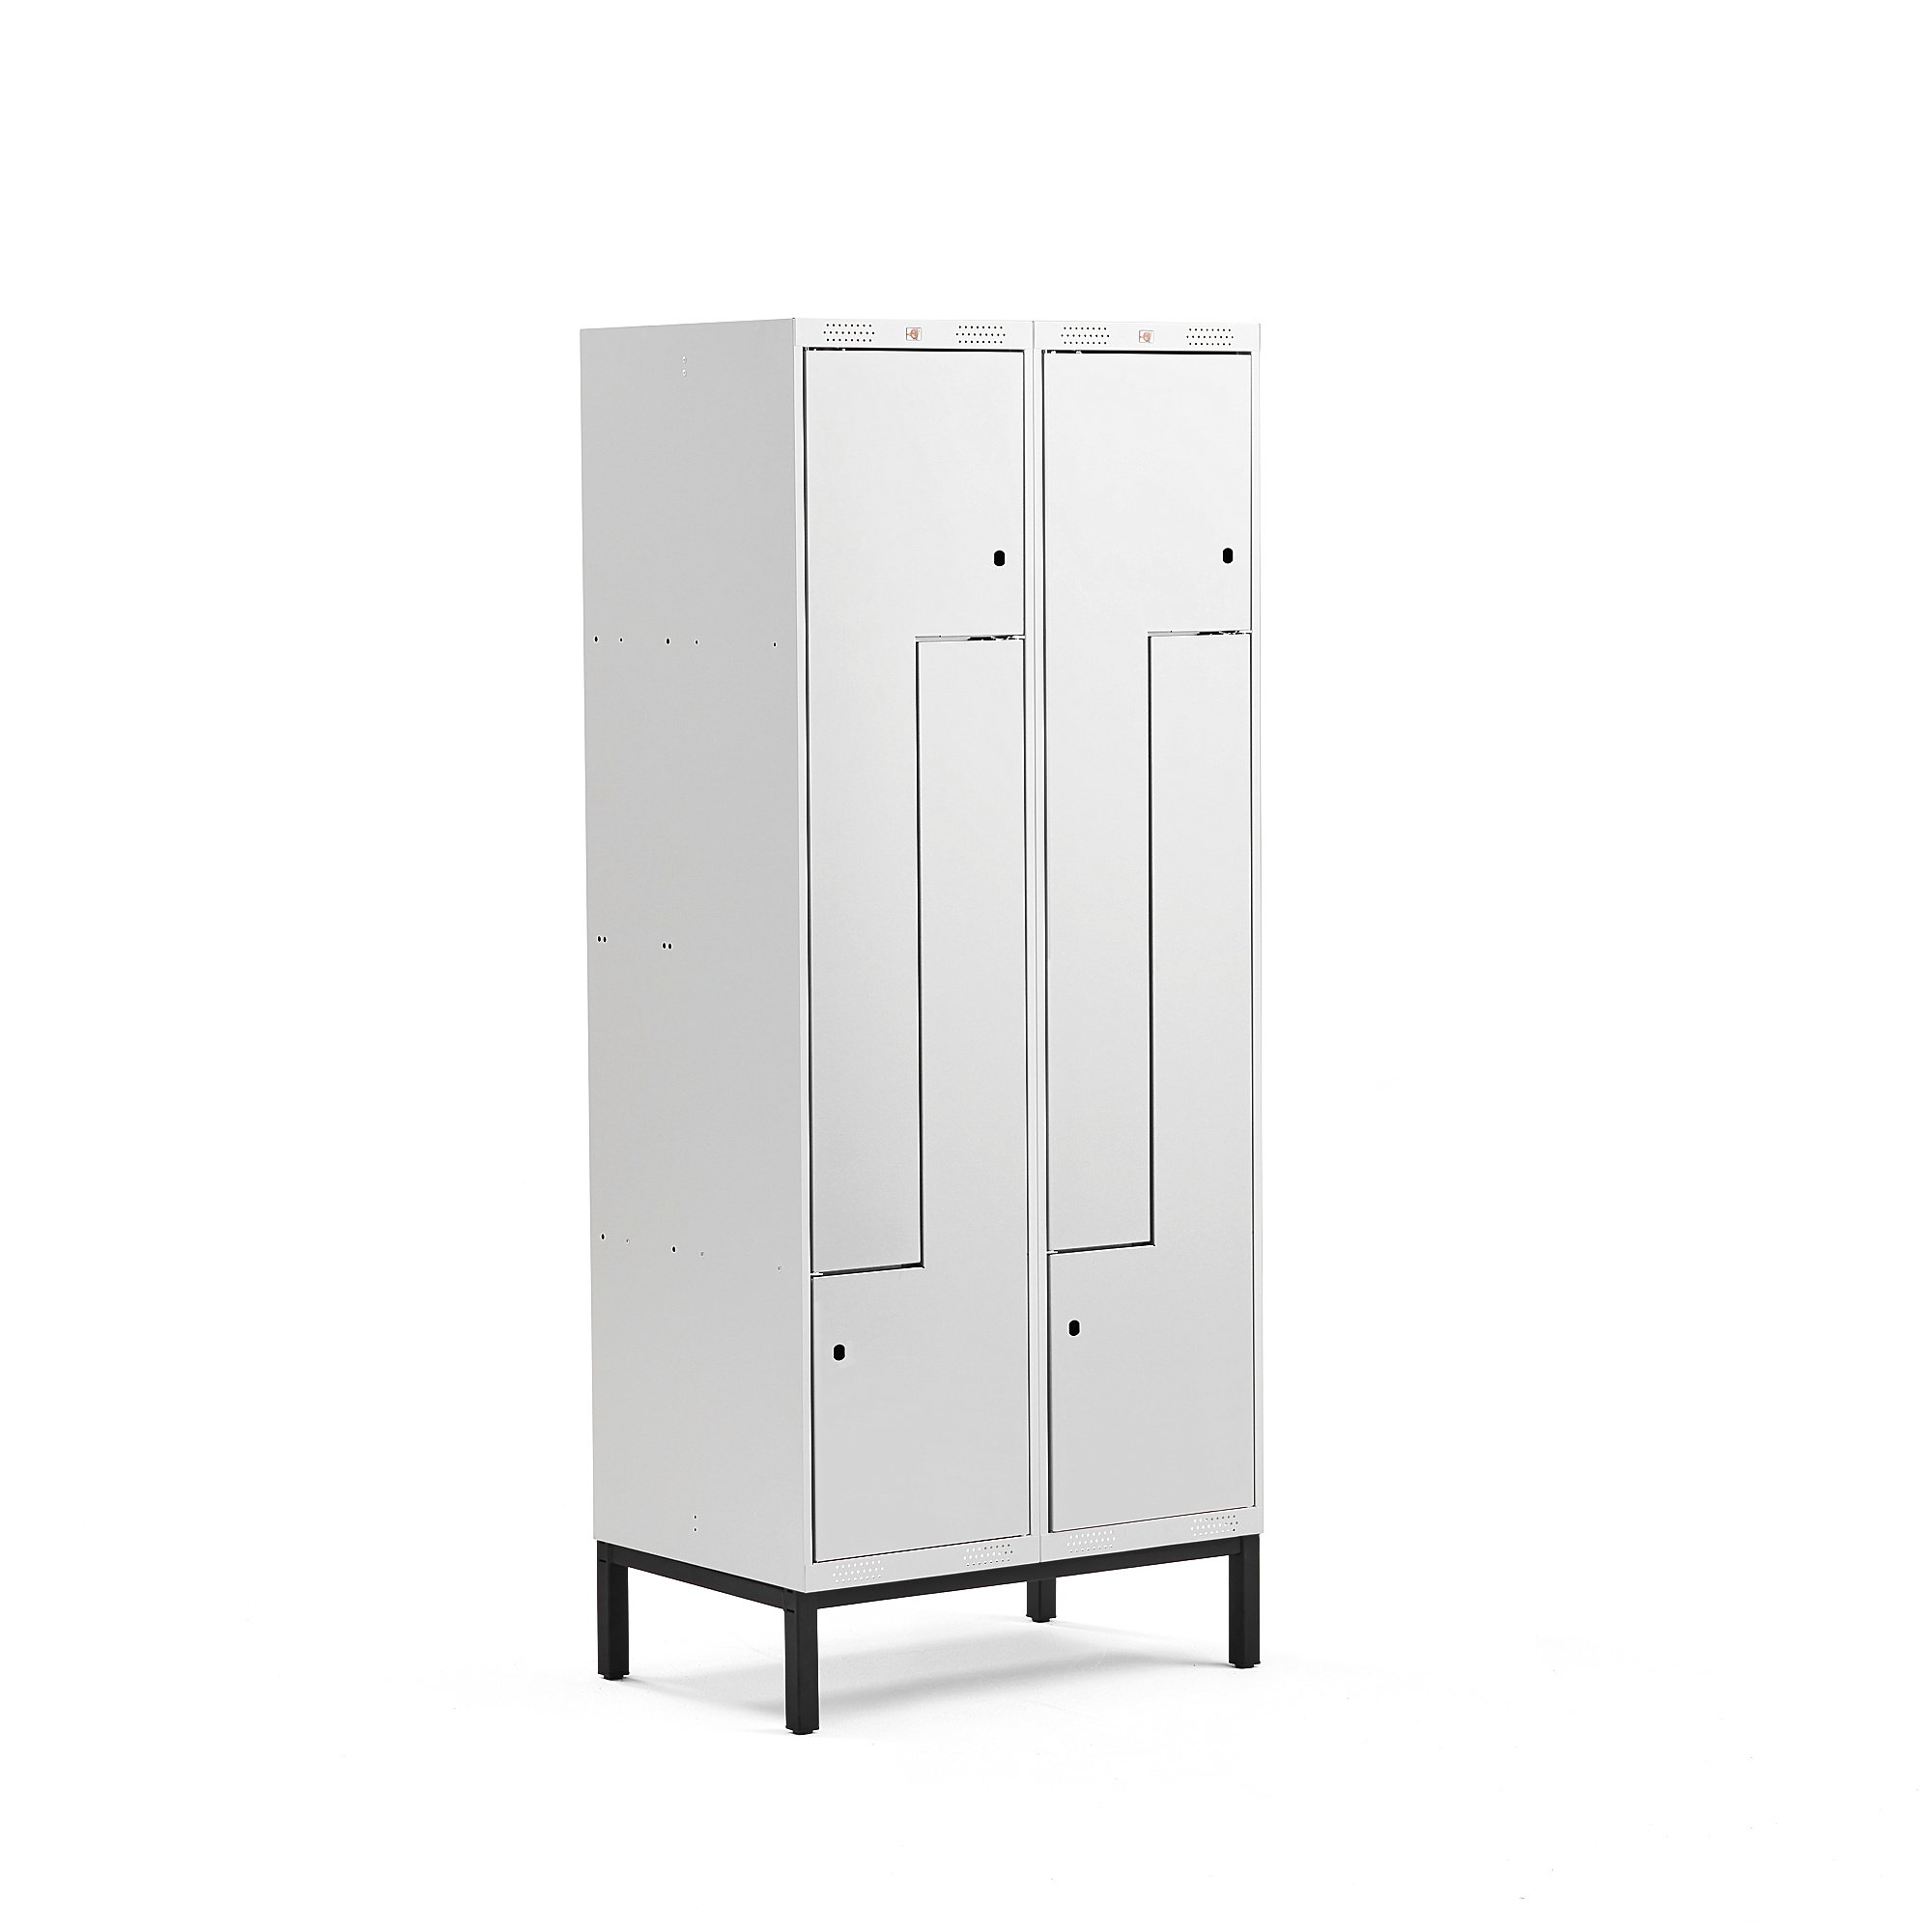 Šatní skříňka CLASSIC Z, s nohami, 2 sekce, 4 dveře, 1940x800x550 mm, šedé dveře